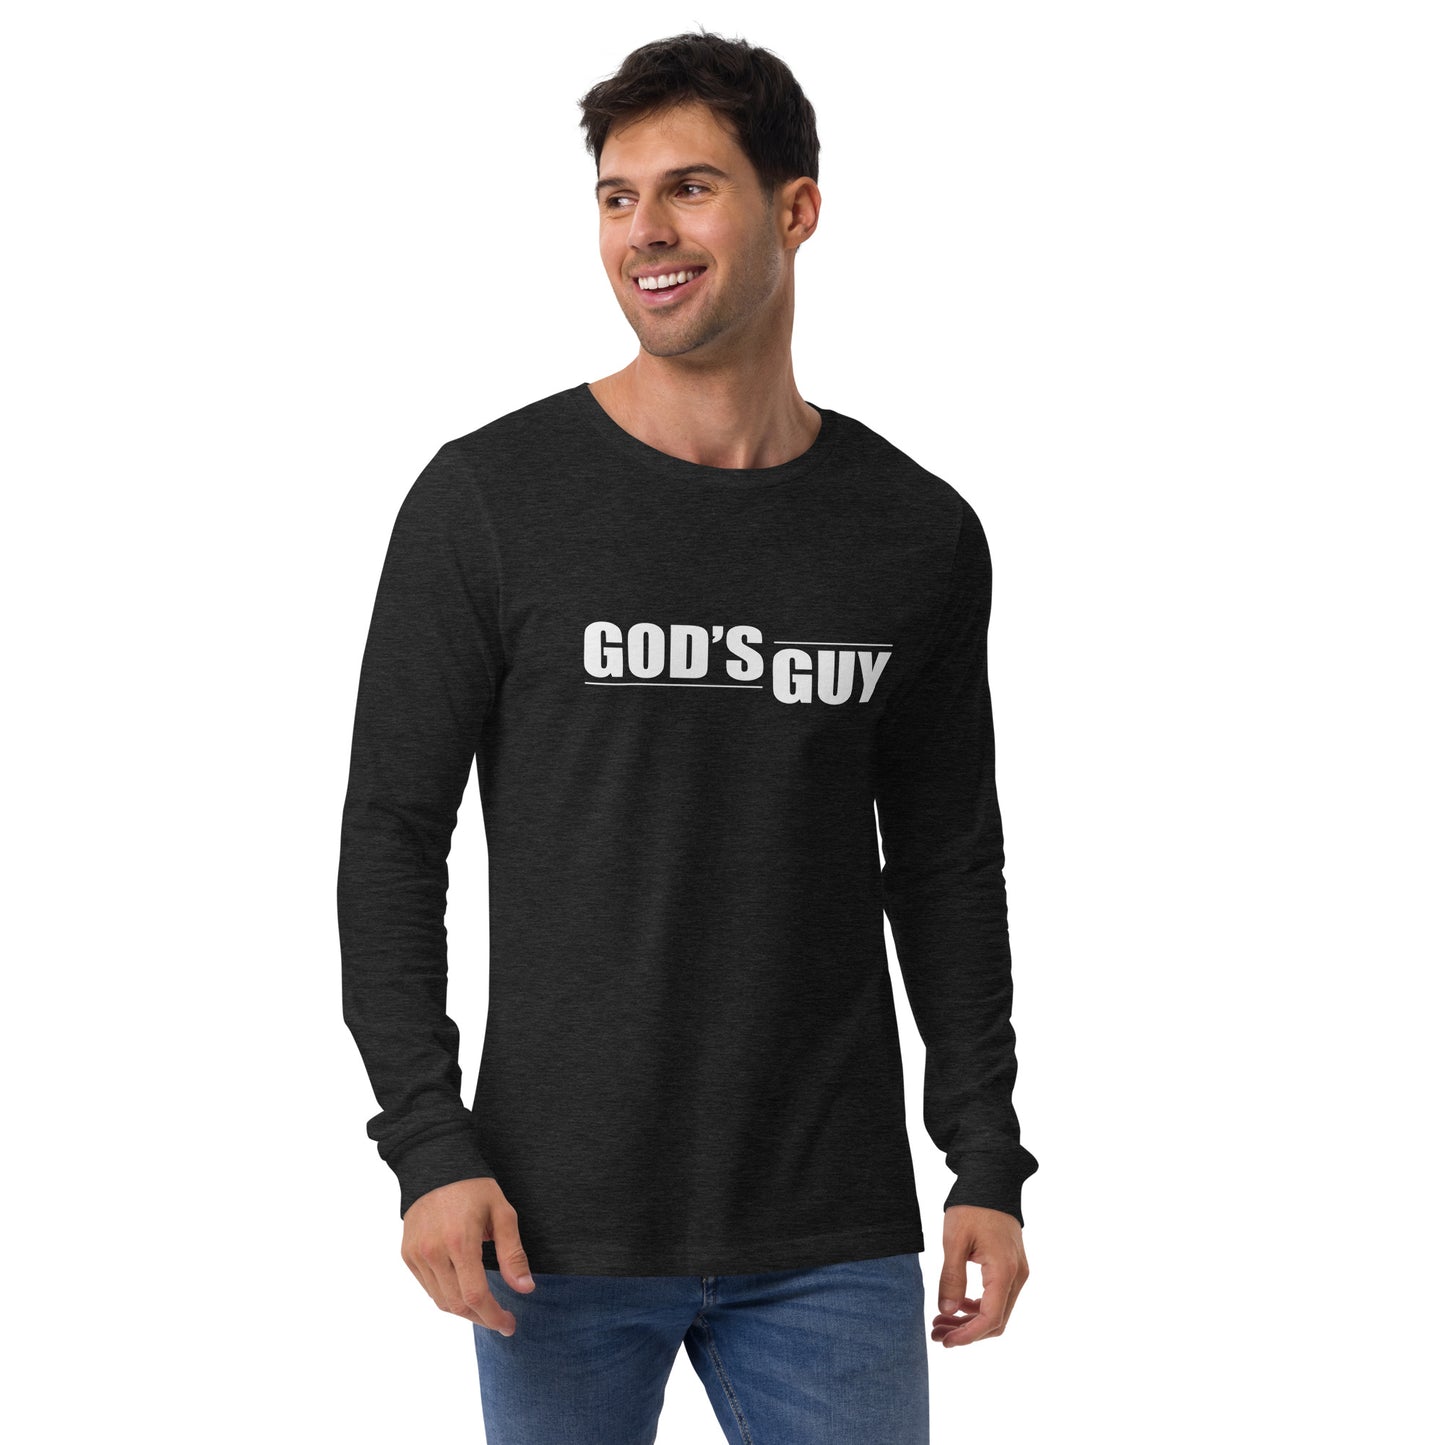 "God's Guy" Long Sleeve Tee